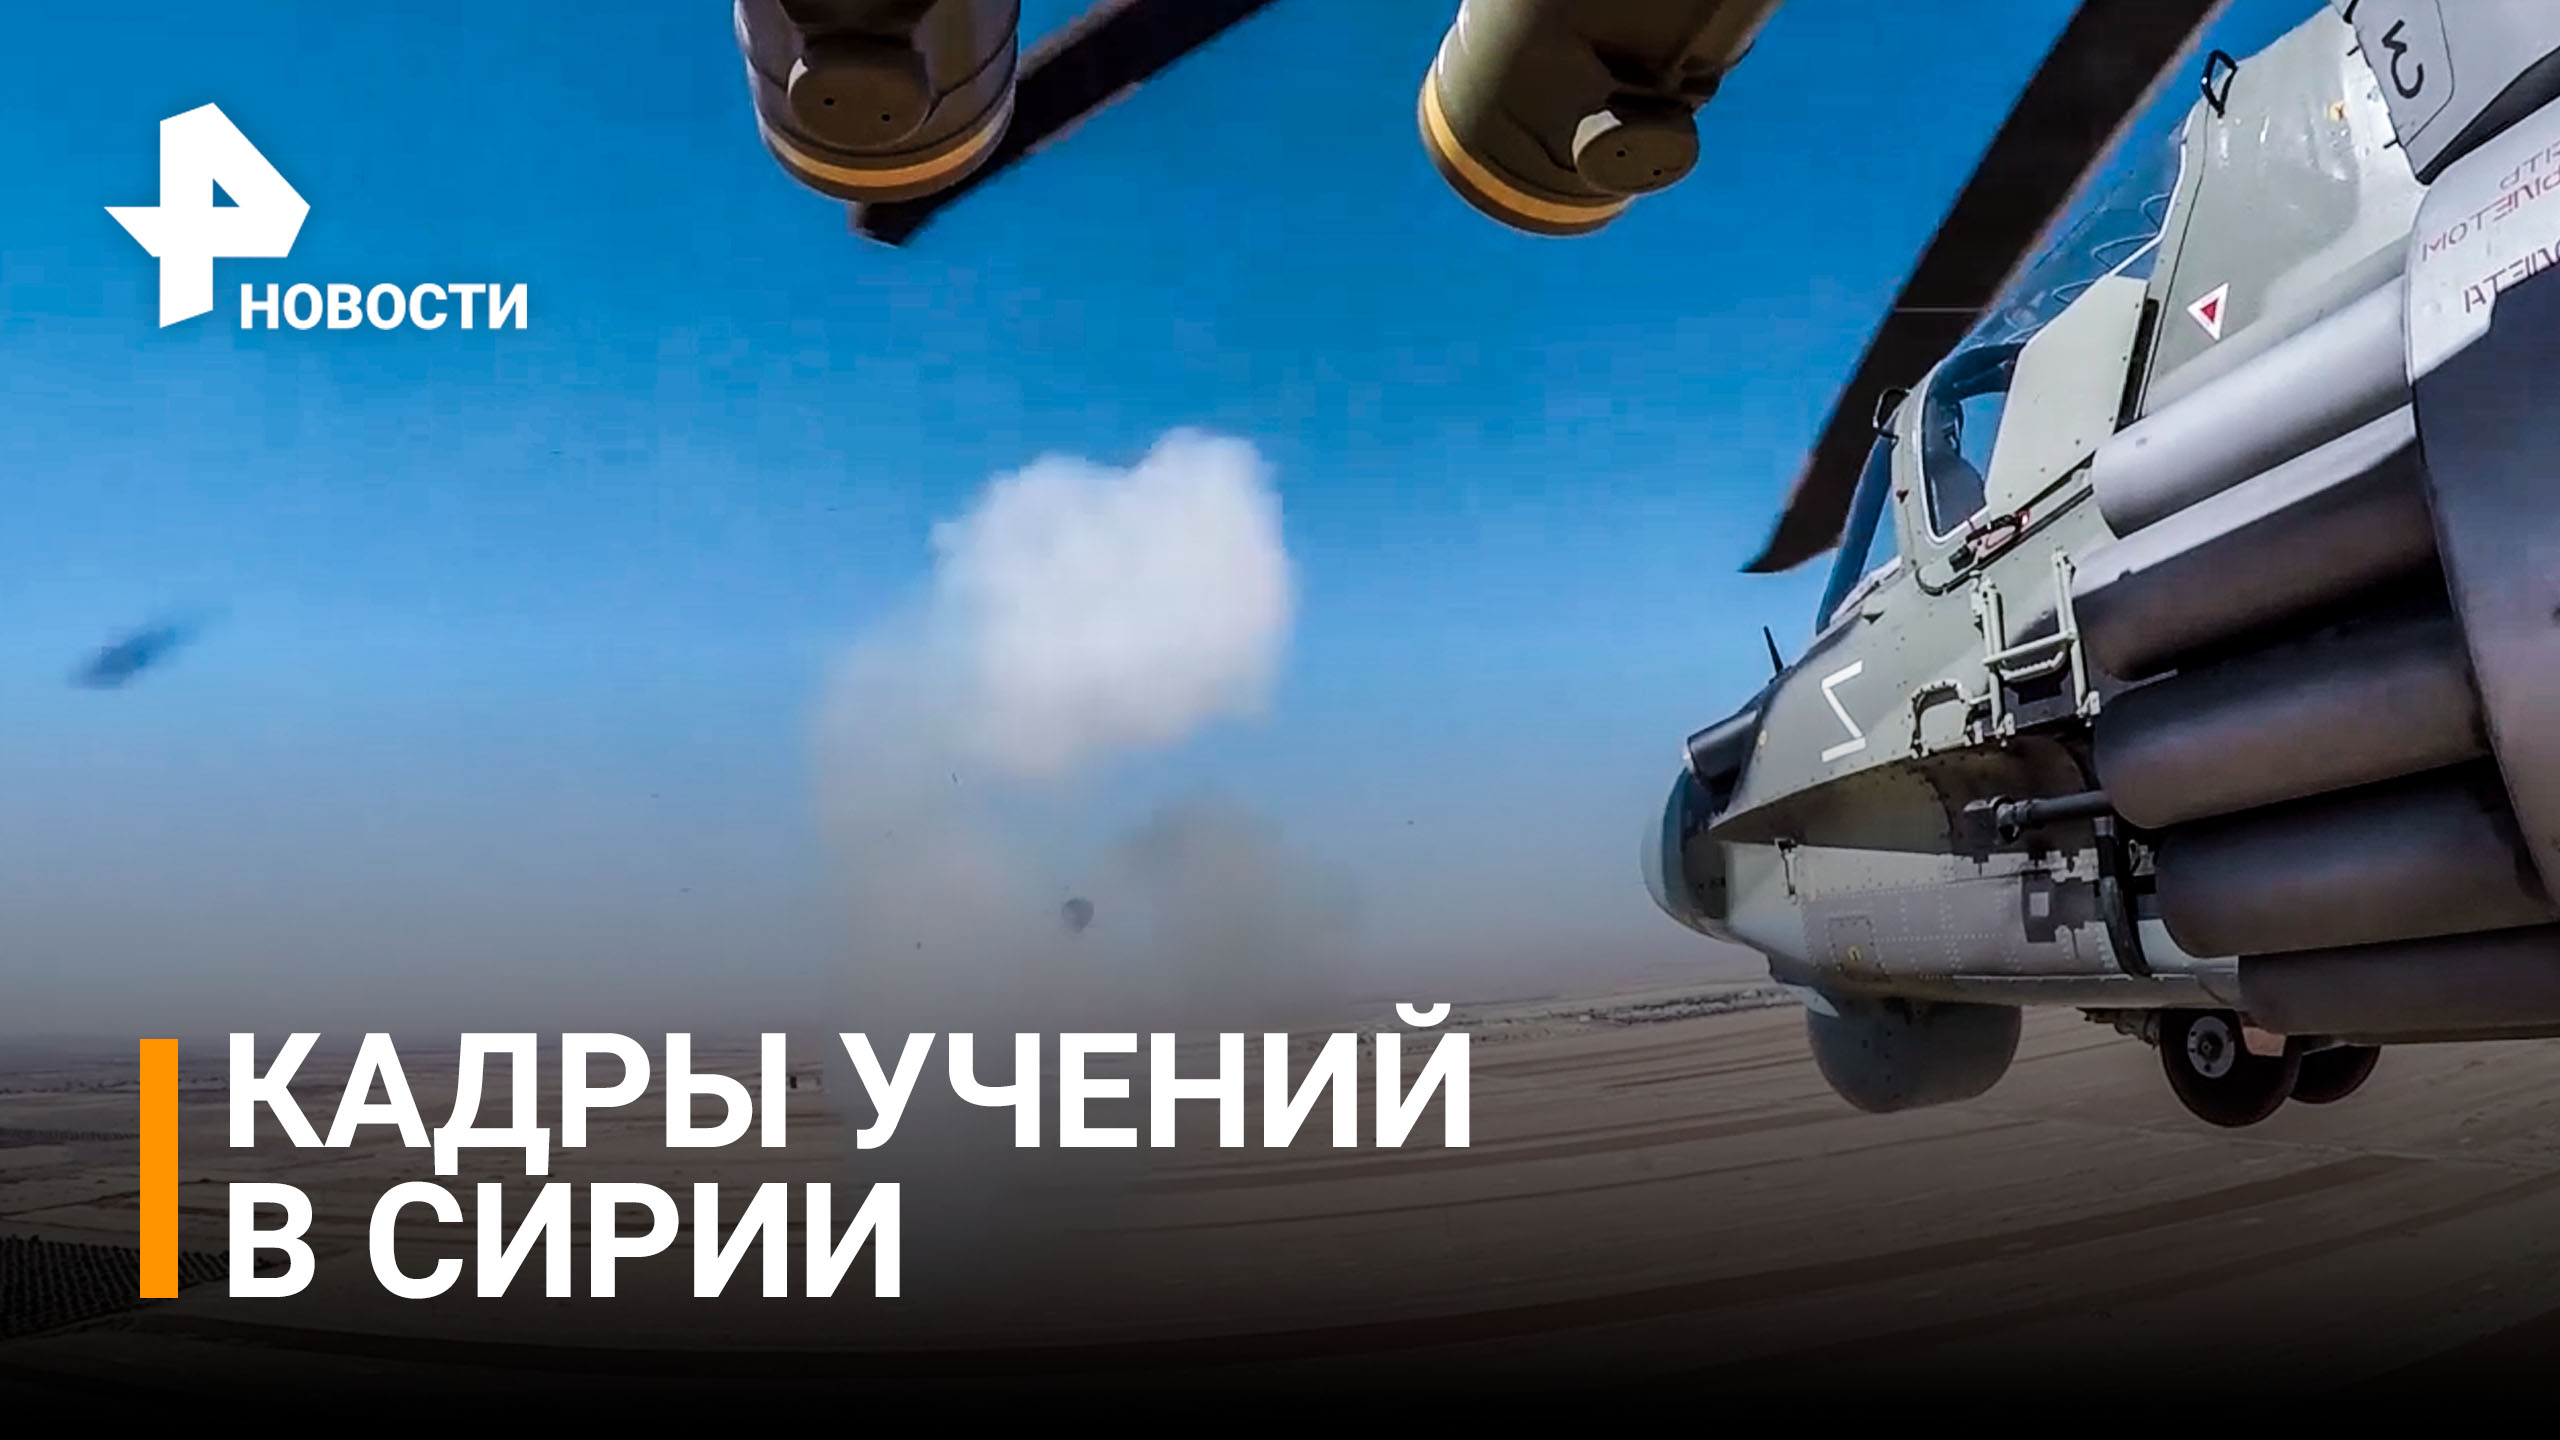 Вертолеты, истребители, испытания огнем: кадры учений в Сирии/РЕН новости